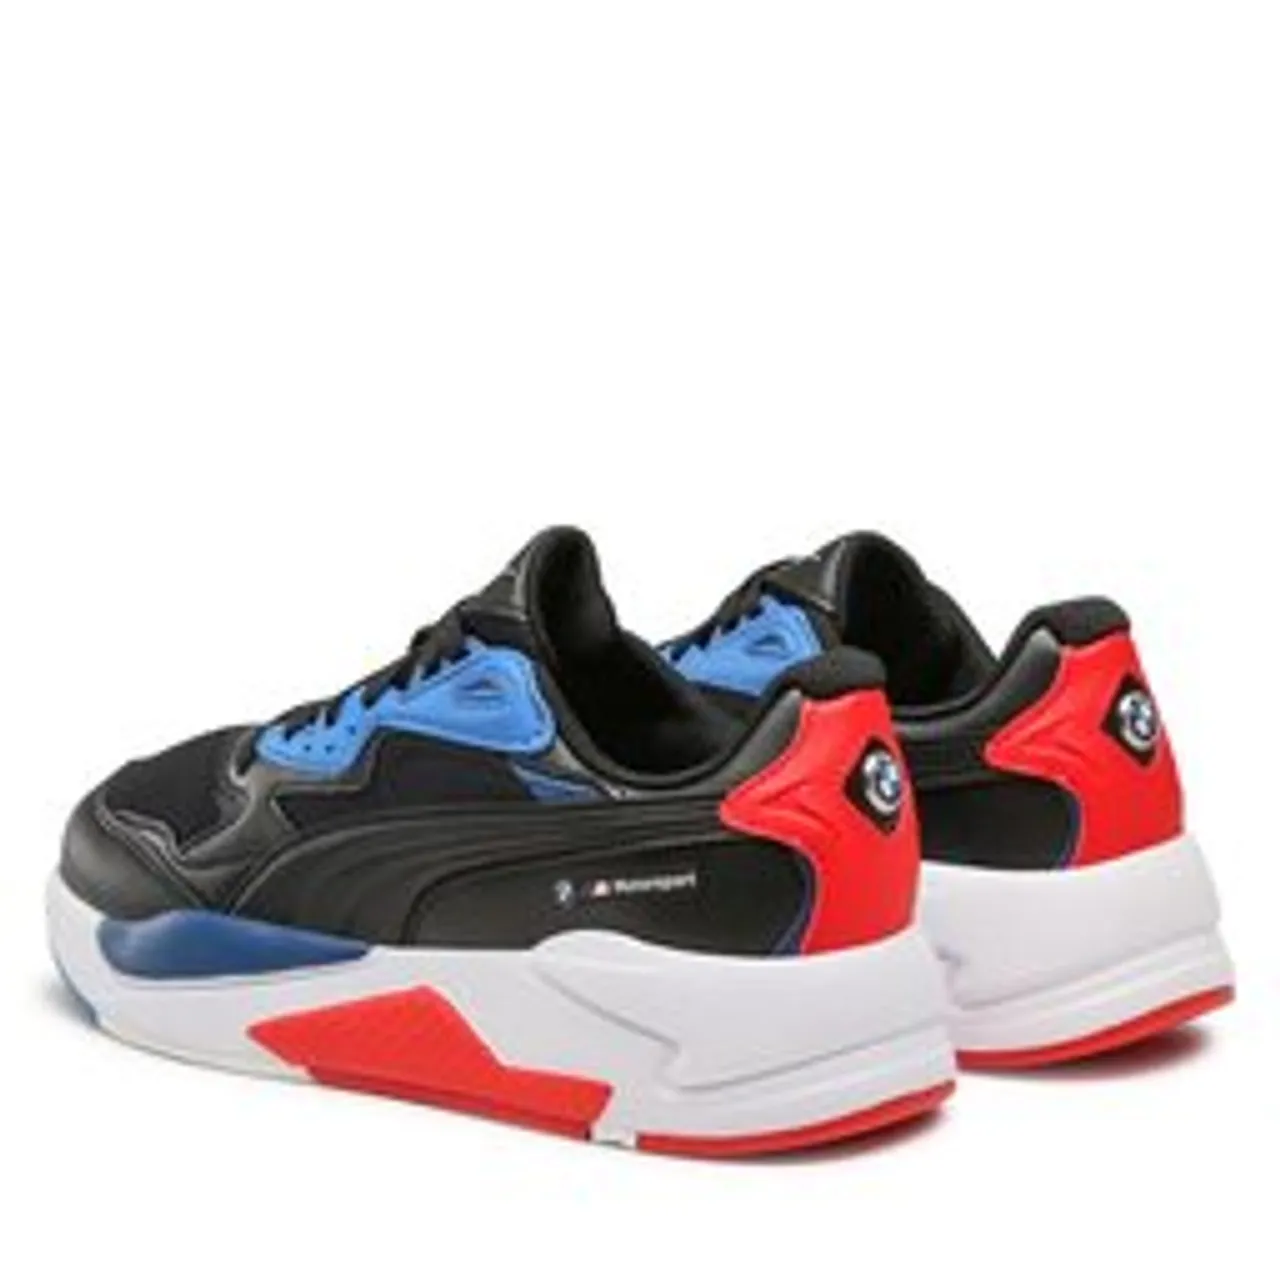 Sneakers Puma Bmw Mms X-Ray Speed 307137 05 Puma Black/Pro Blue/Pop Red